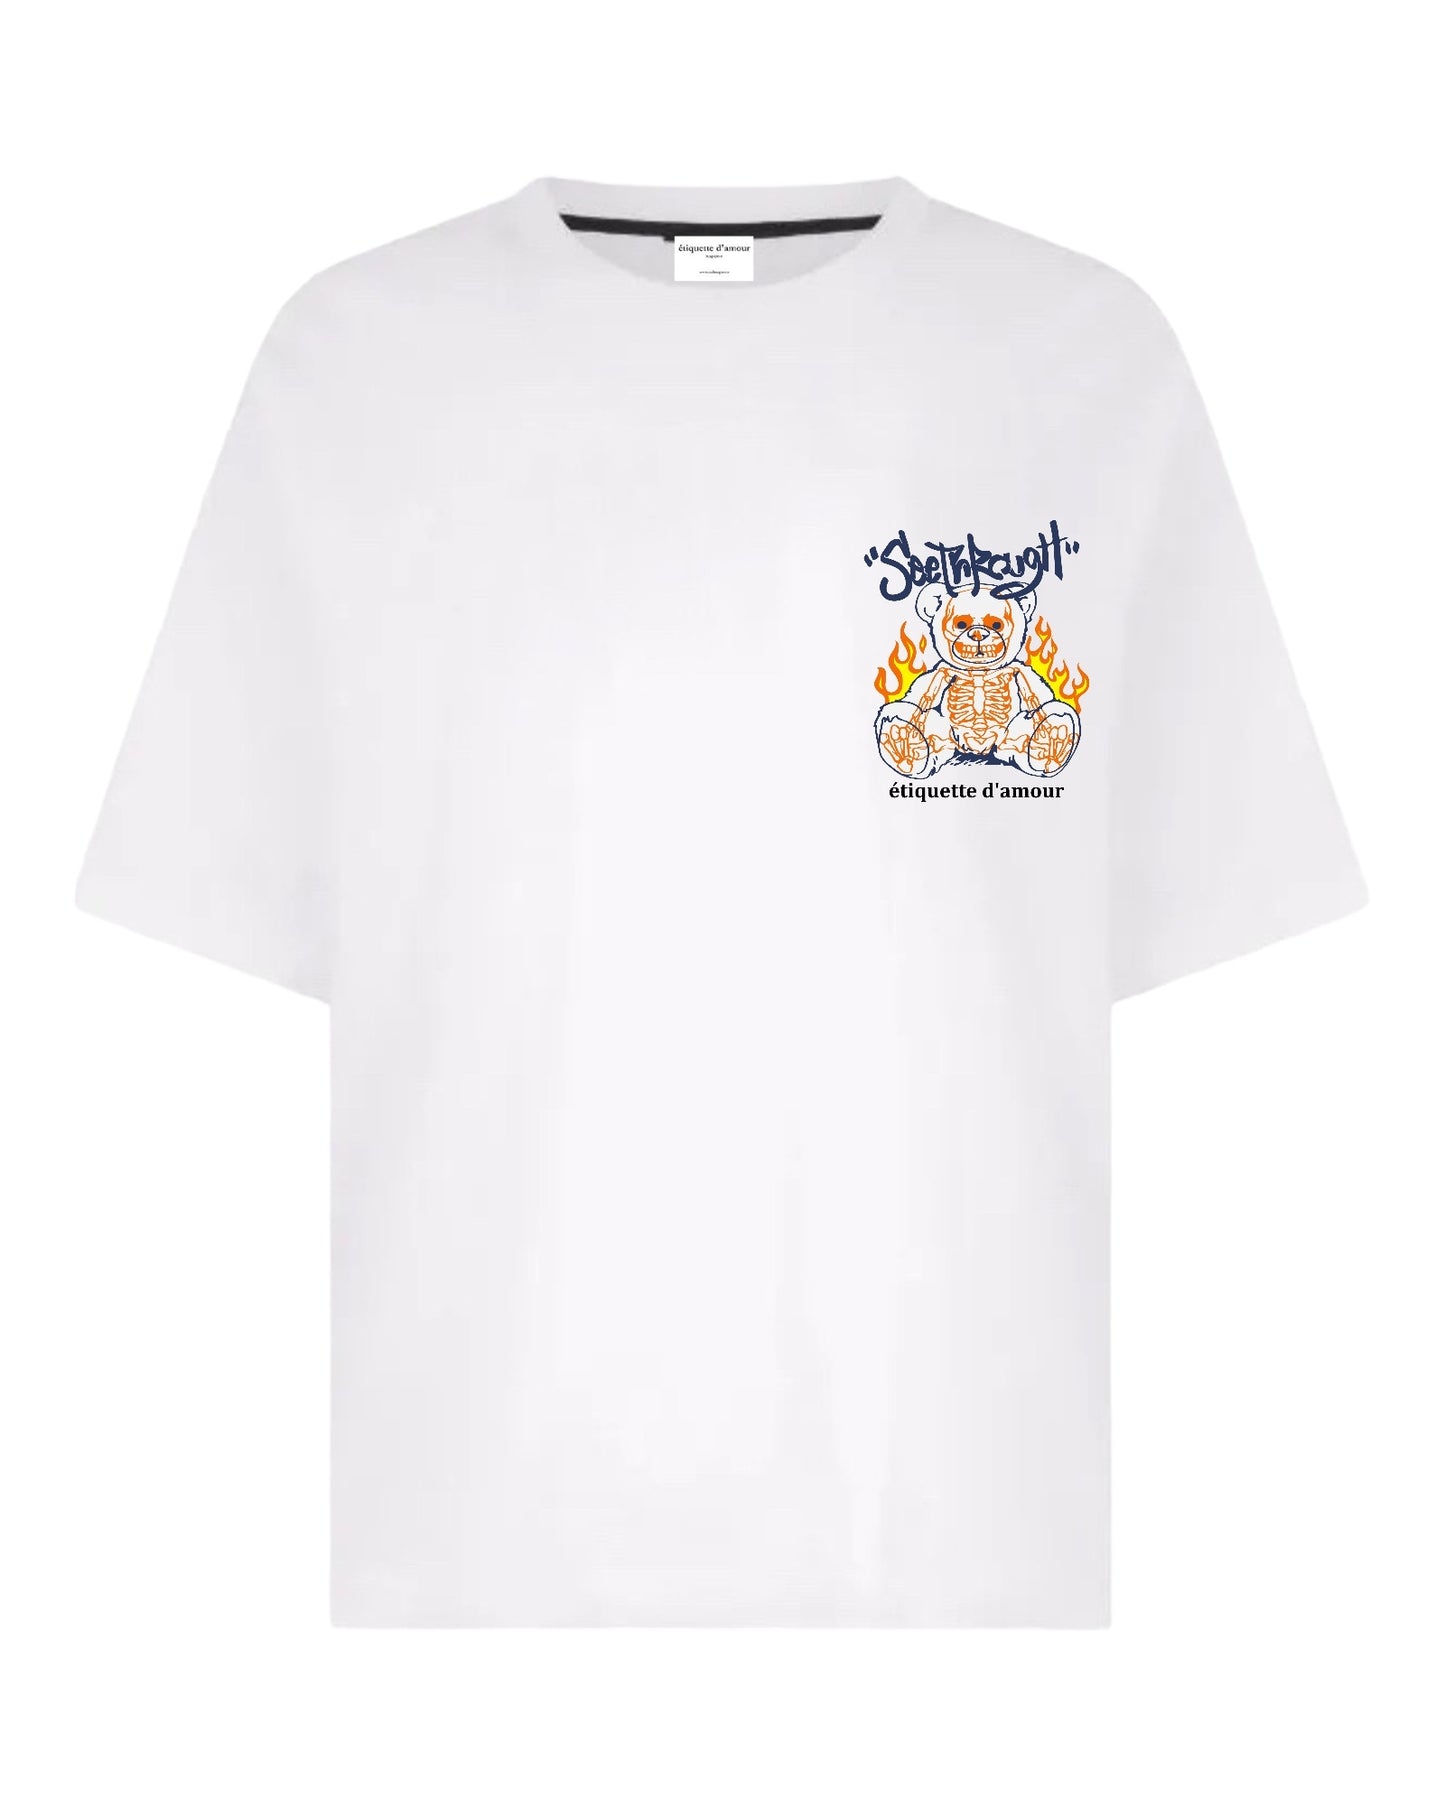 XLuxe T-Shirt #0010